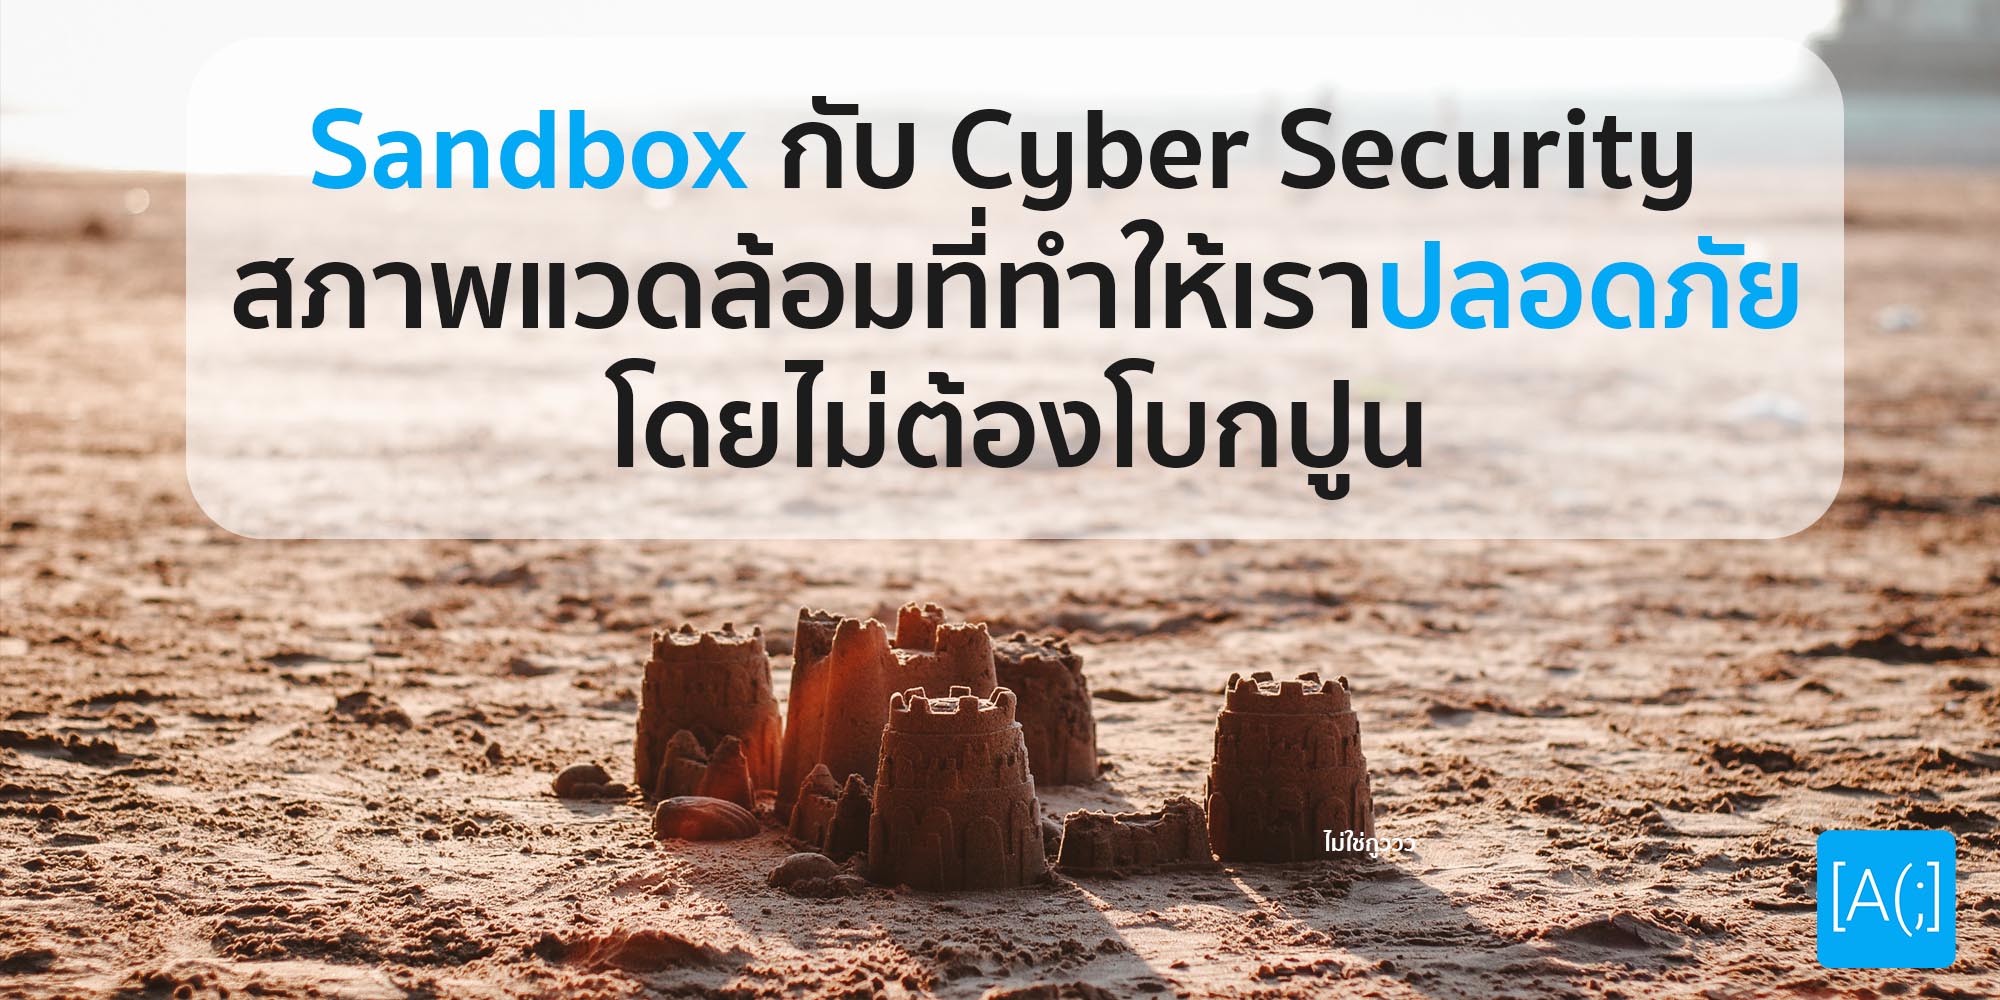 Sandbox กับ Cyber Security สภาพแวดล้อมที่ทำให้เราปลอดภัย โดยไม่ต้องโบกปูน